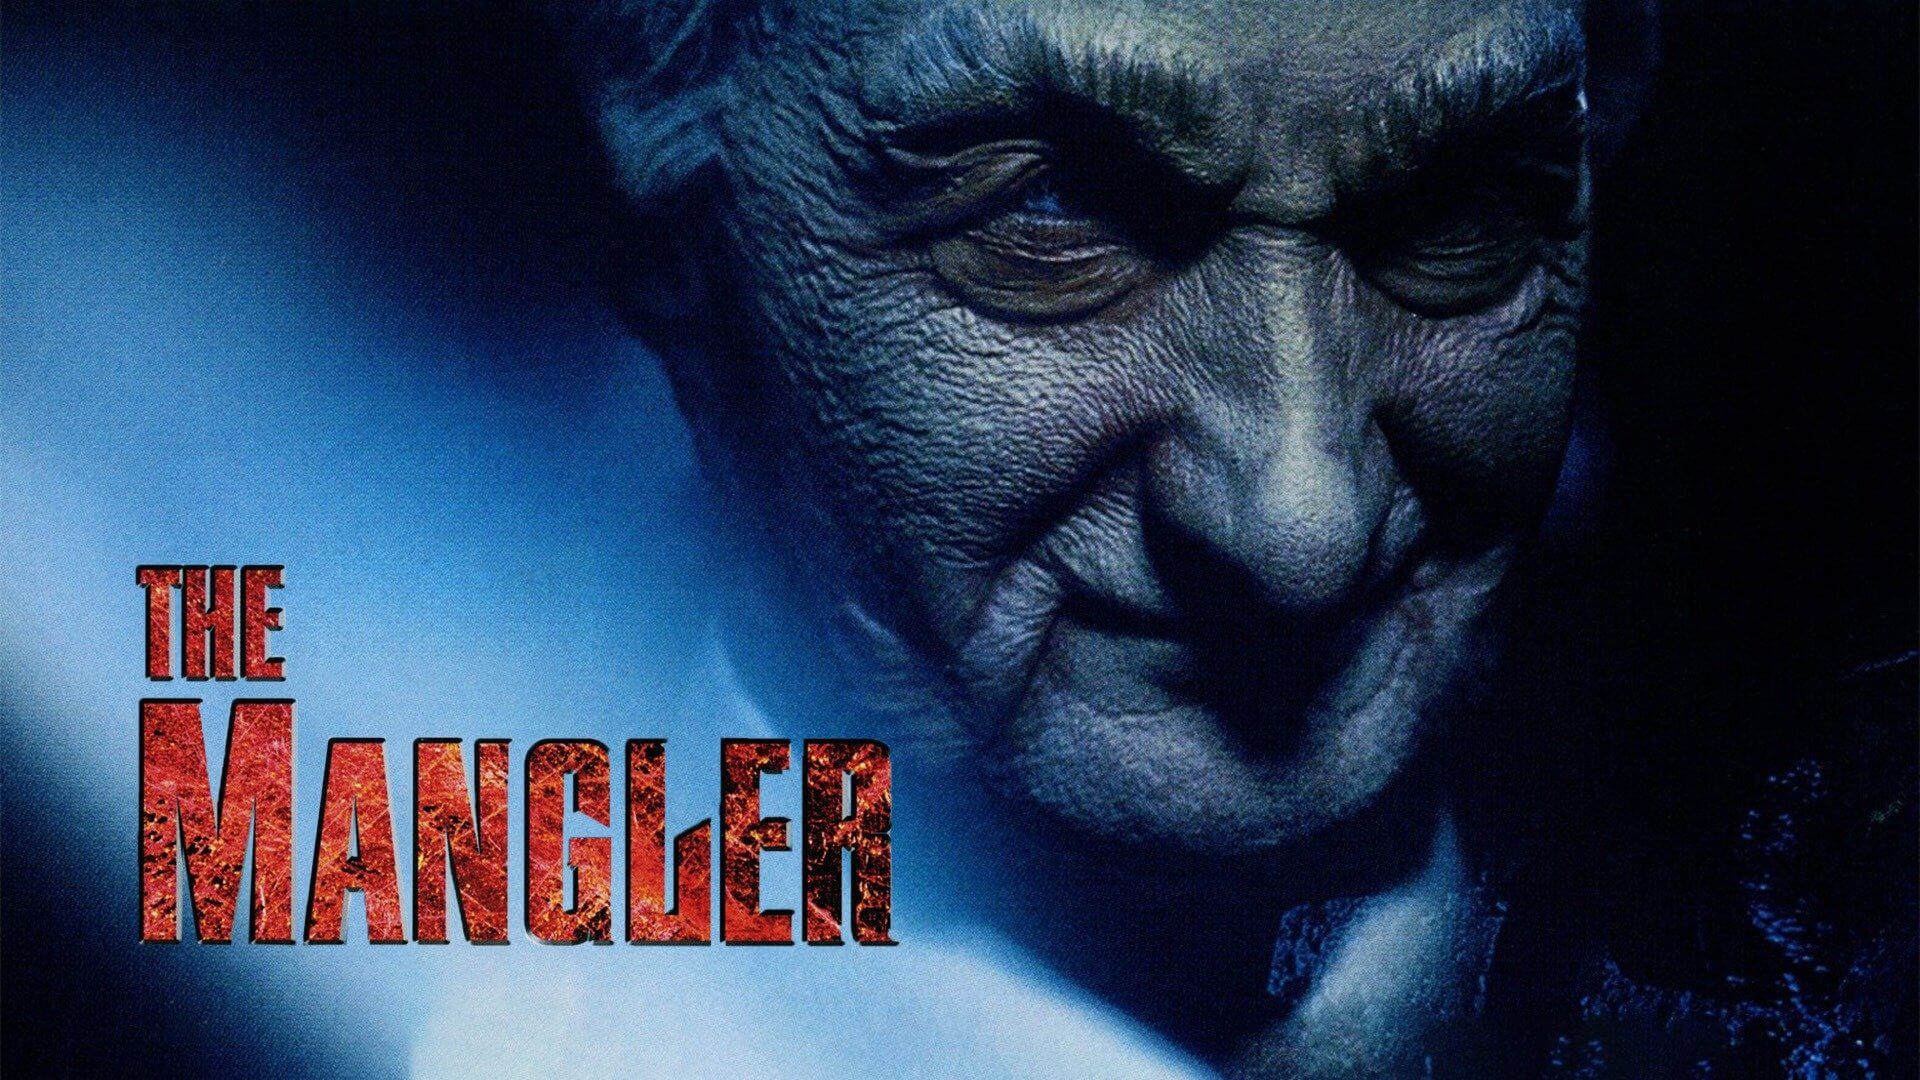 The Mangler 1995